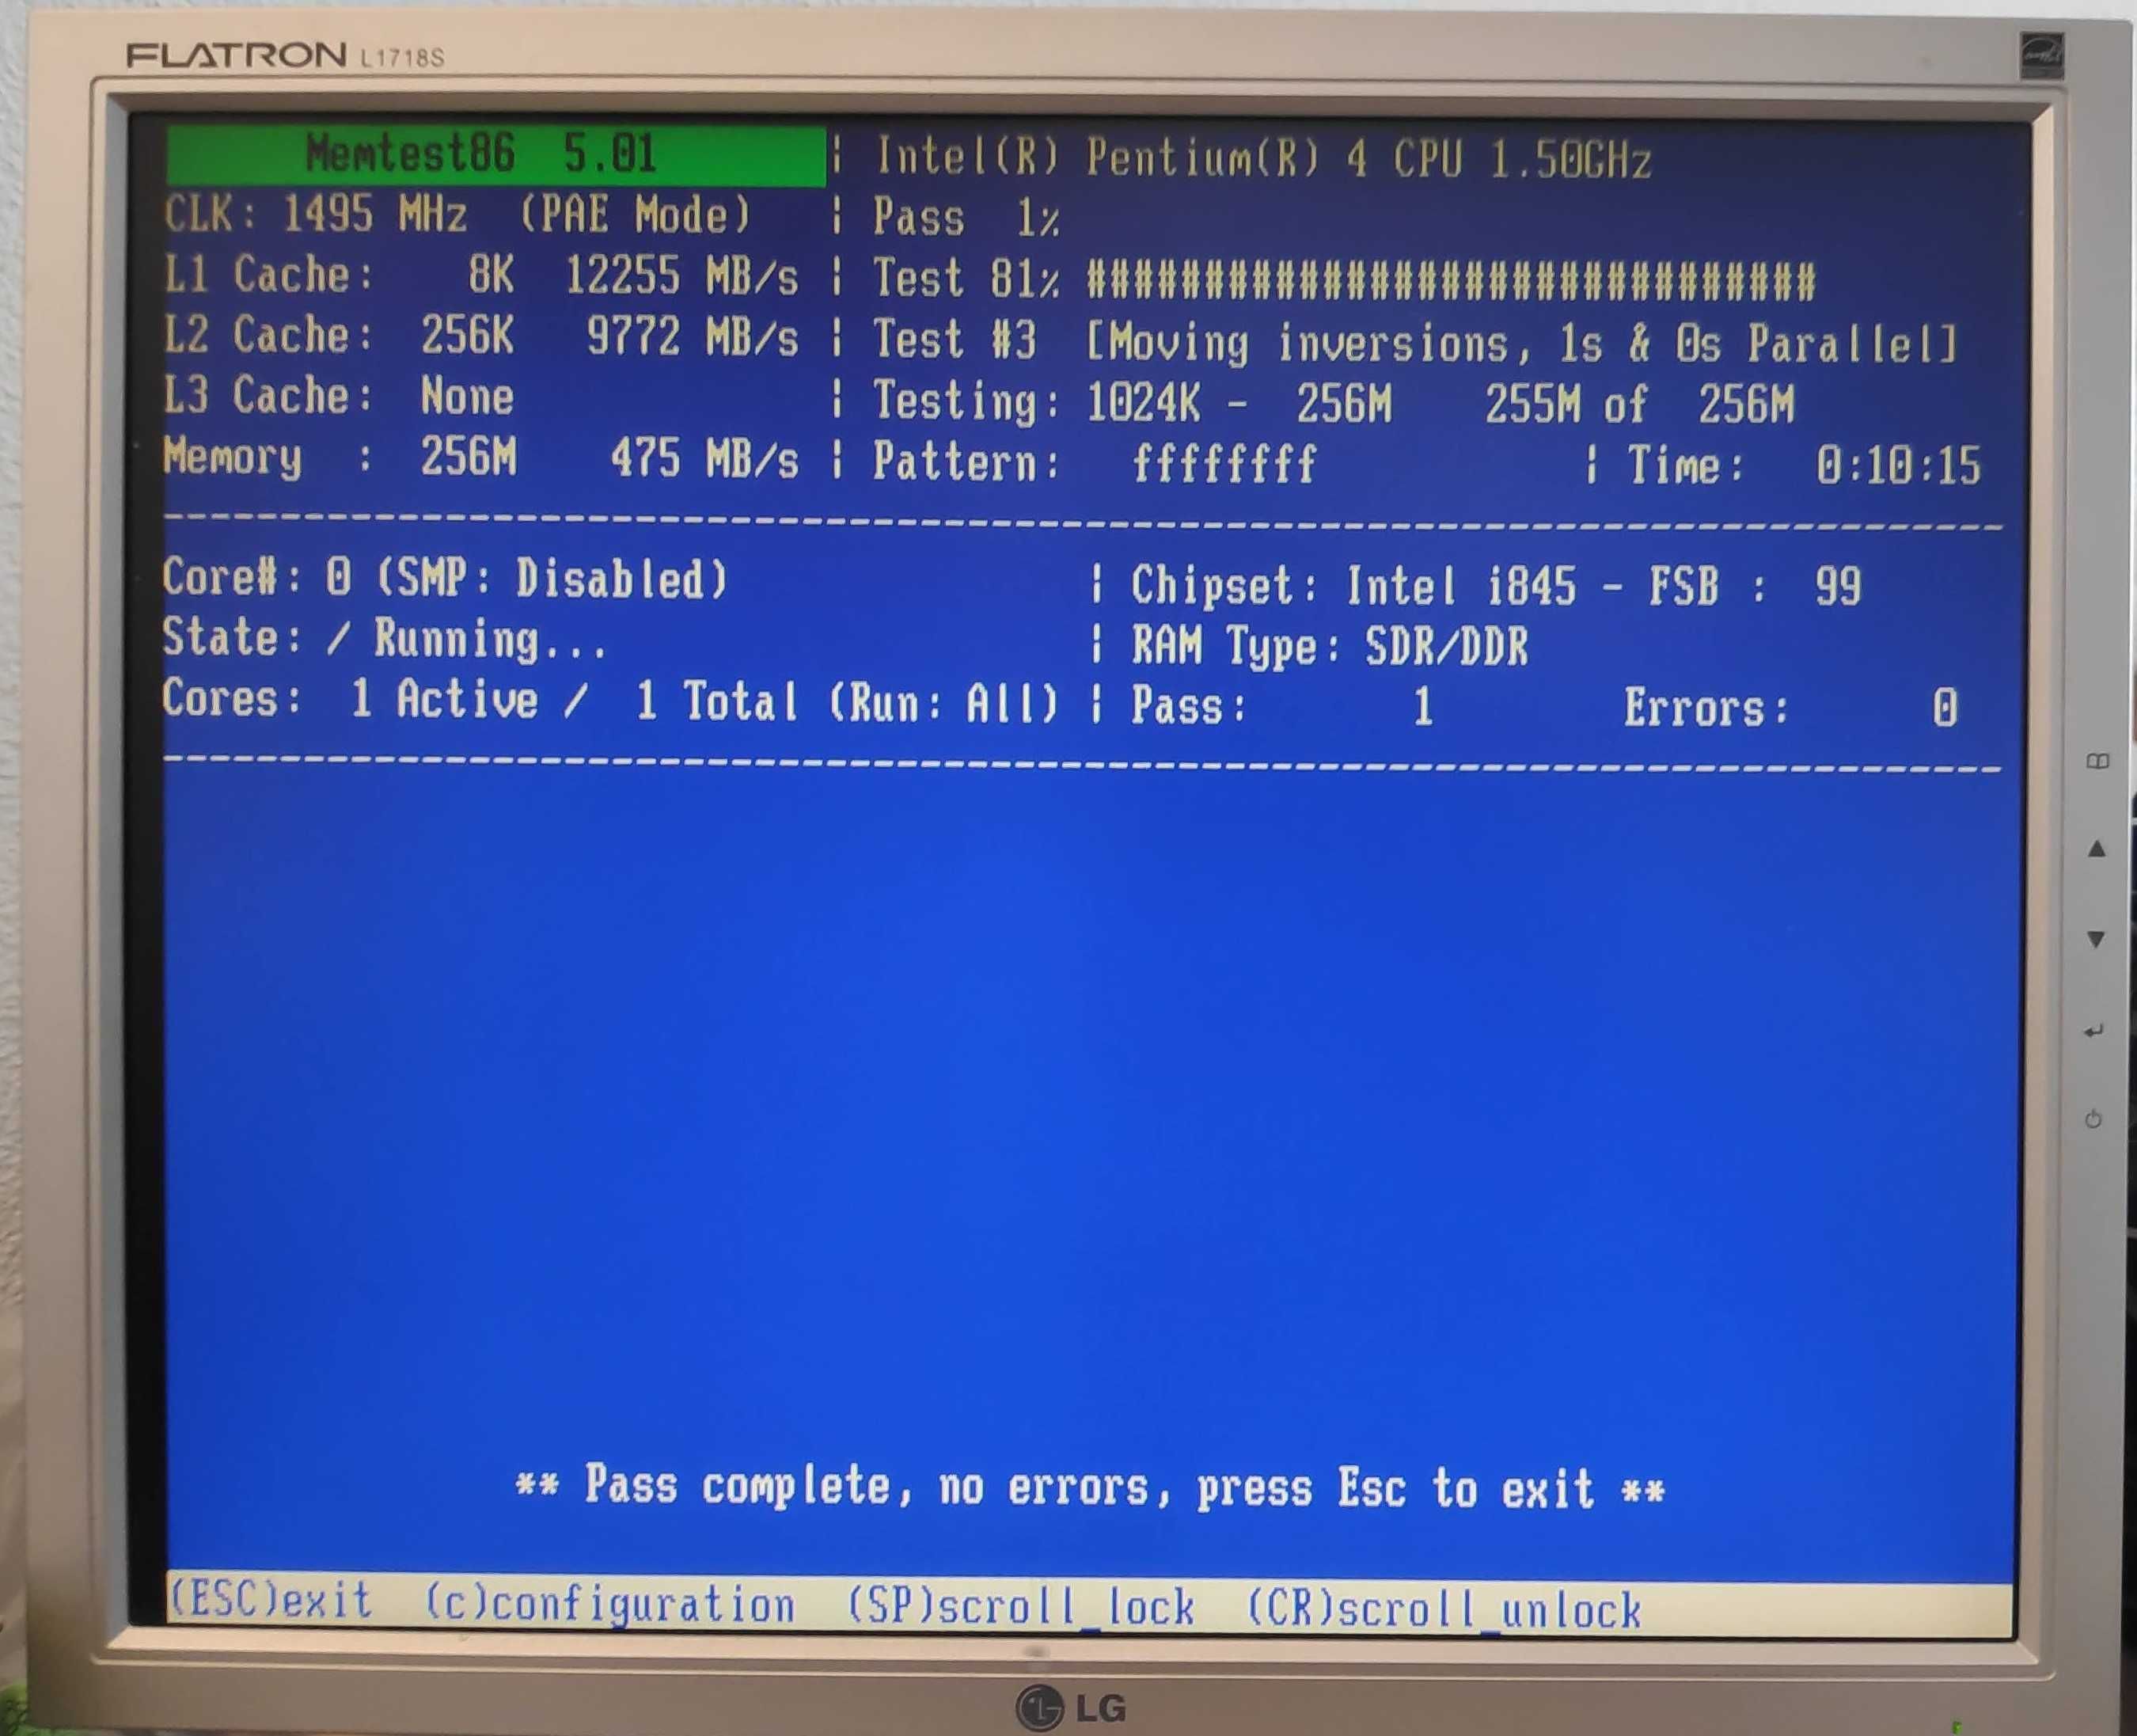 Bundle Retro 5 [Motherboard + Processador + Placa Gráfica + RAM]